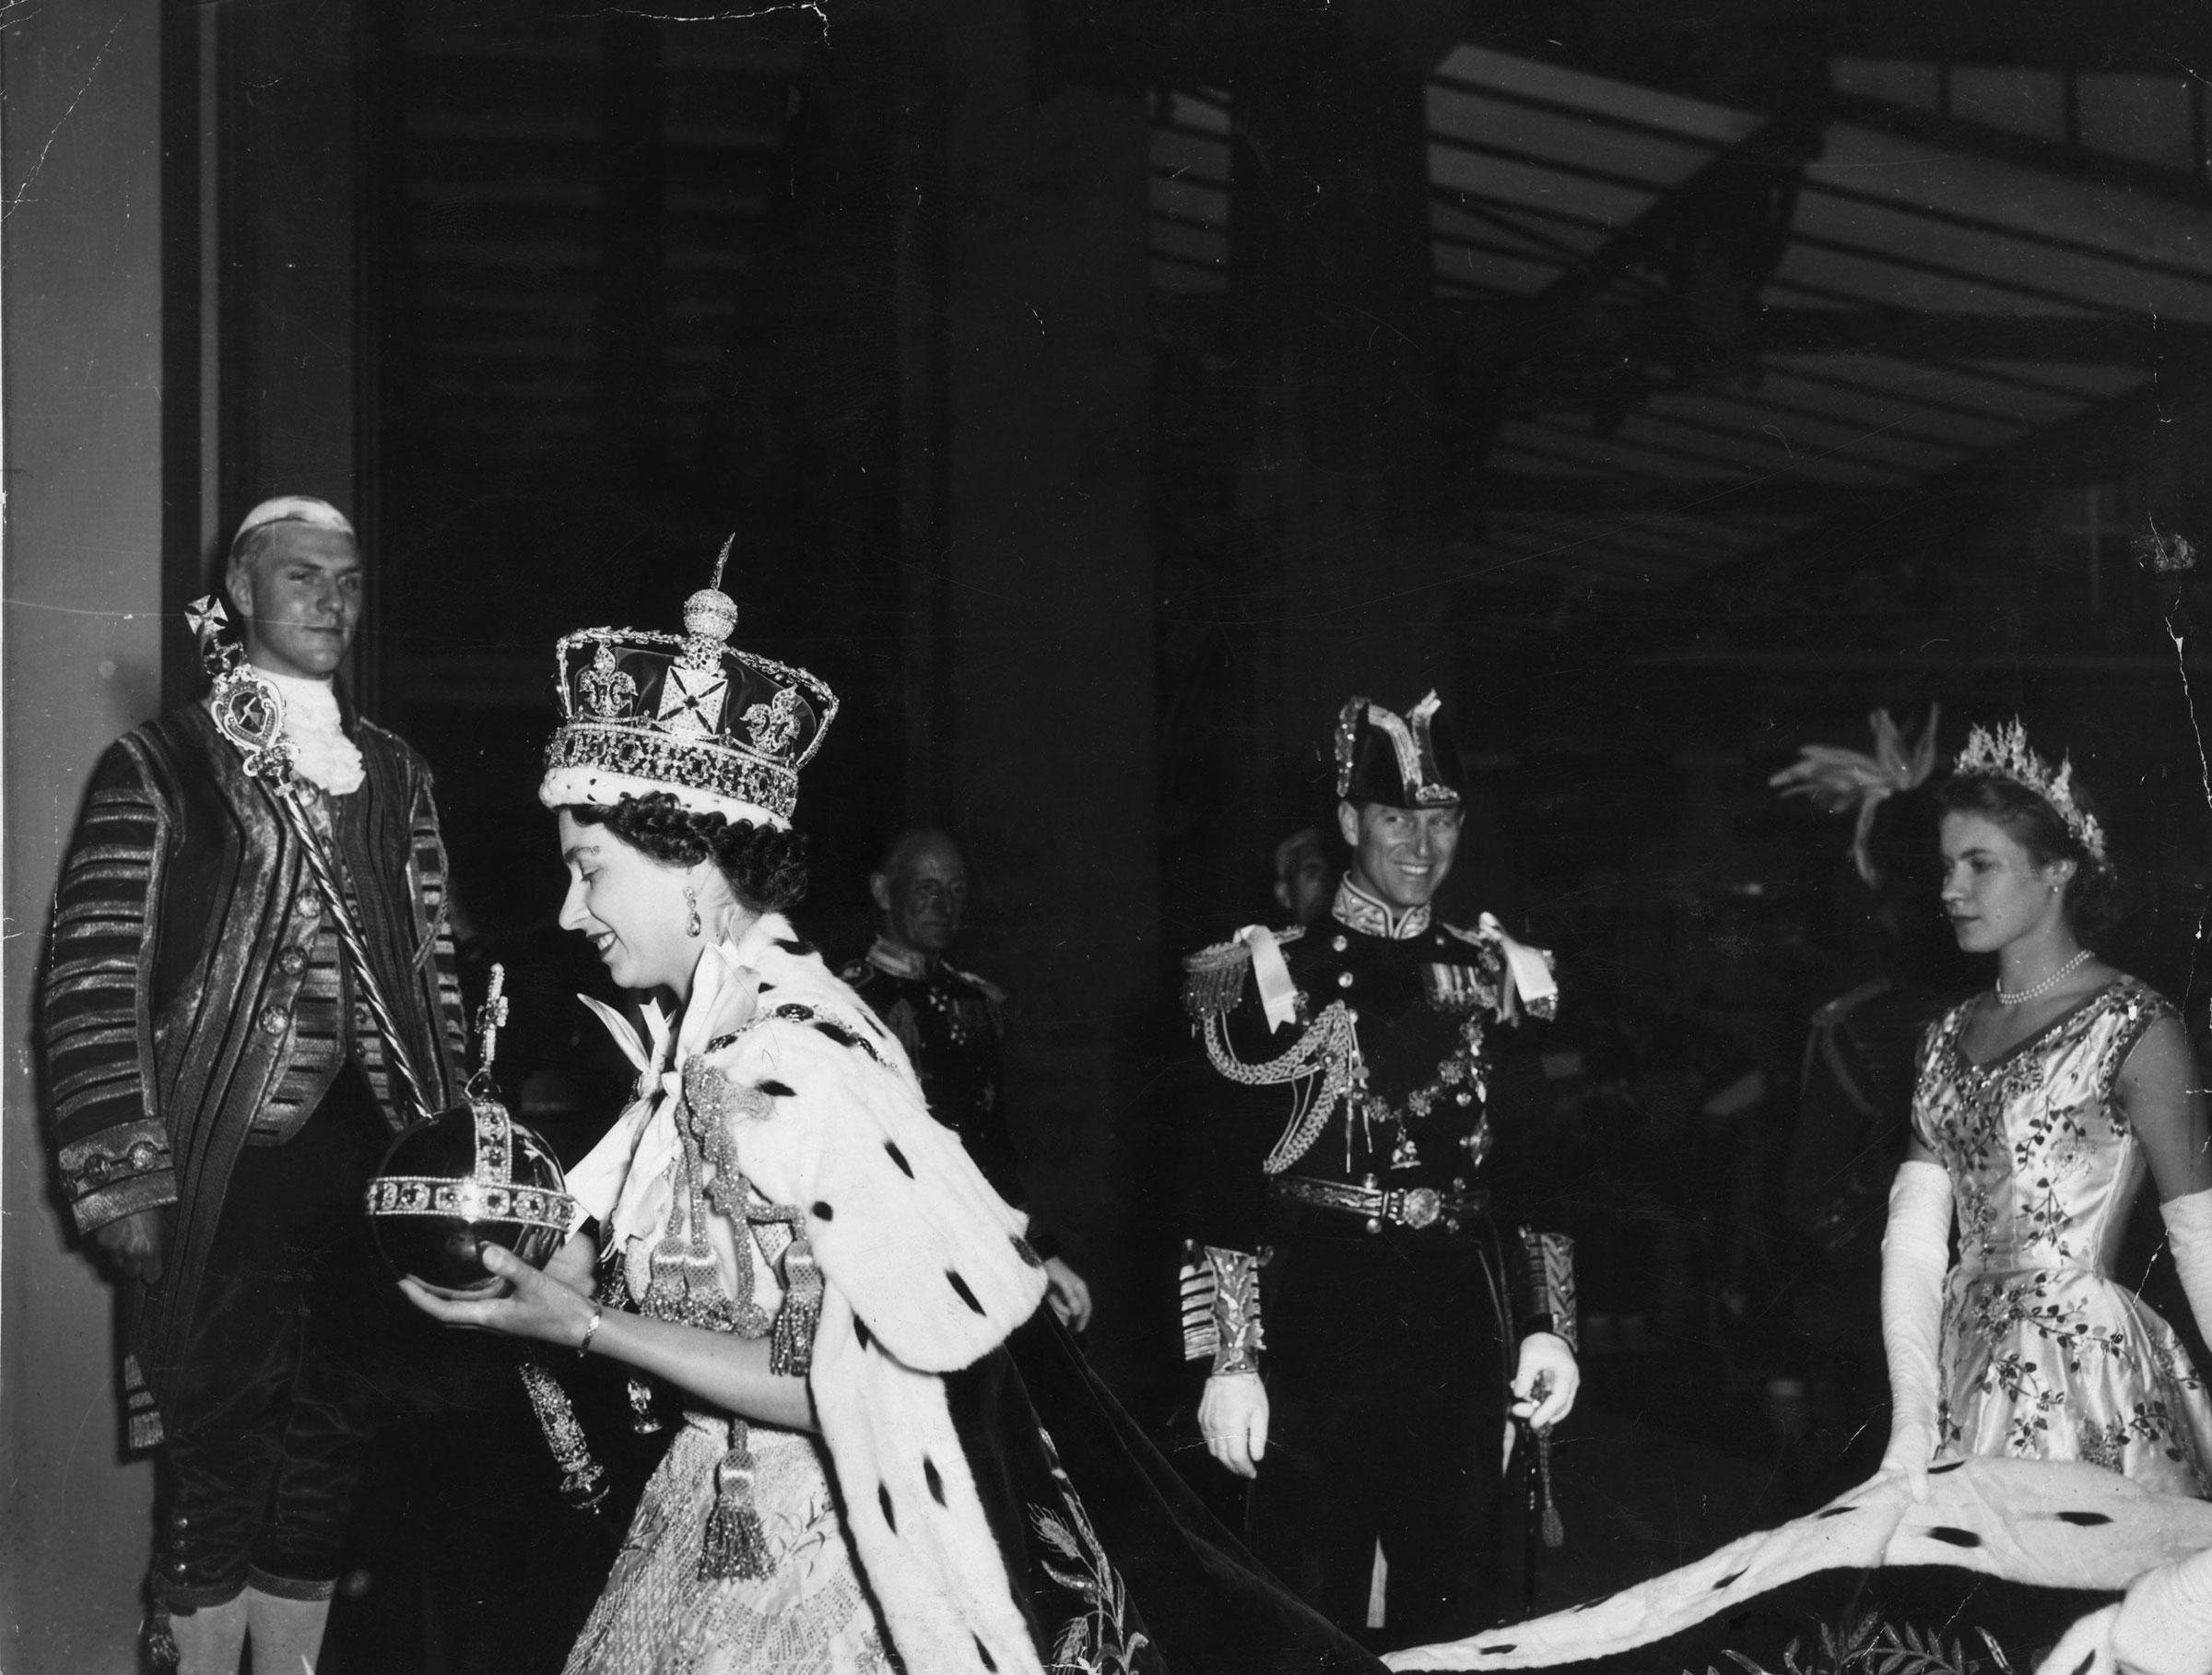 Imperial State tacını giyen ve Orb ve Sceptre'ı taşıyan Kraliçe II. Elizabeth, taç giyme töreninin ardından Londra'daki Westminster Abbey'den Buckingham Sarayı'na döner.  (Topikal Basın Ajansı/Getty Images)